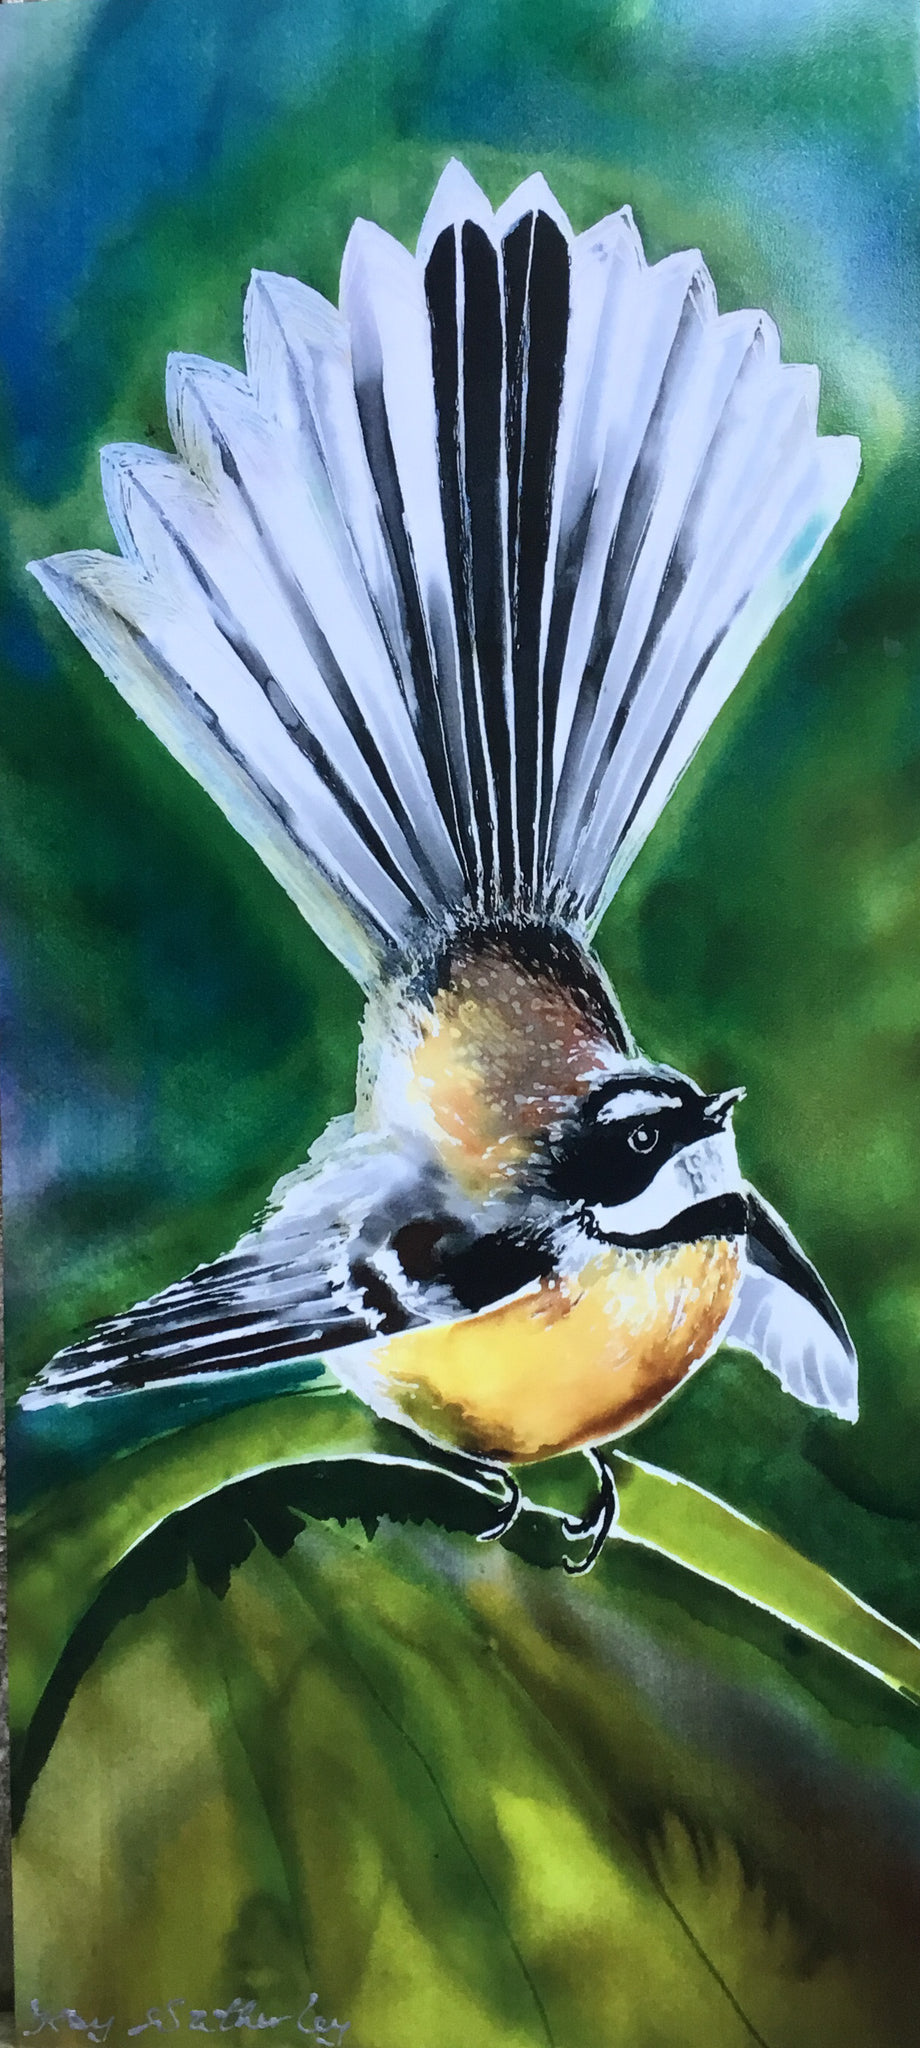 A Video of NZ Birds Outdoor and Indoor Art.